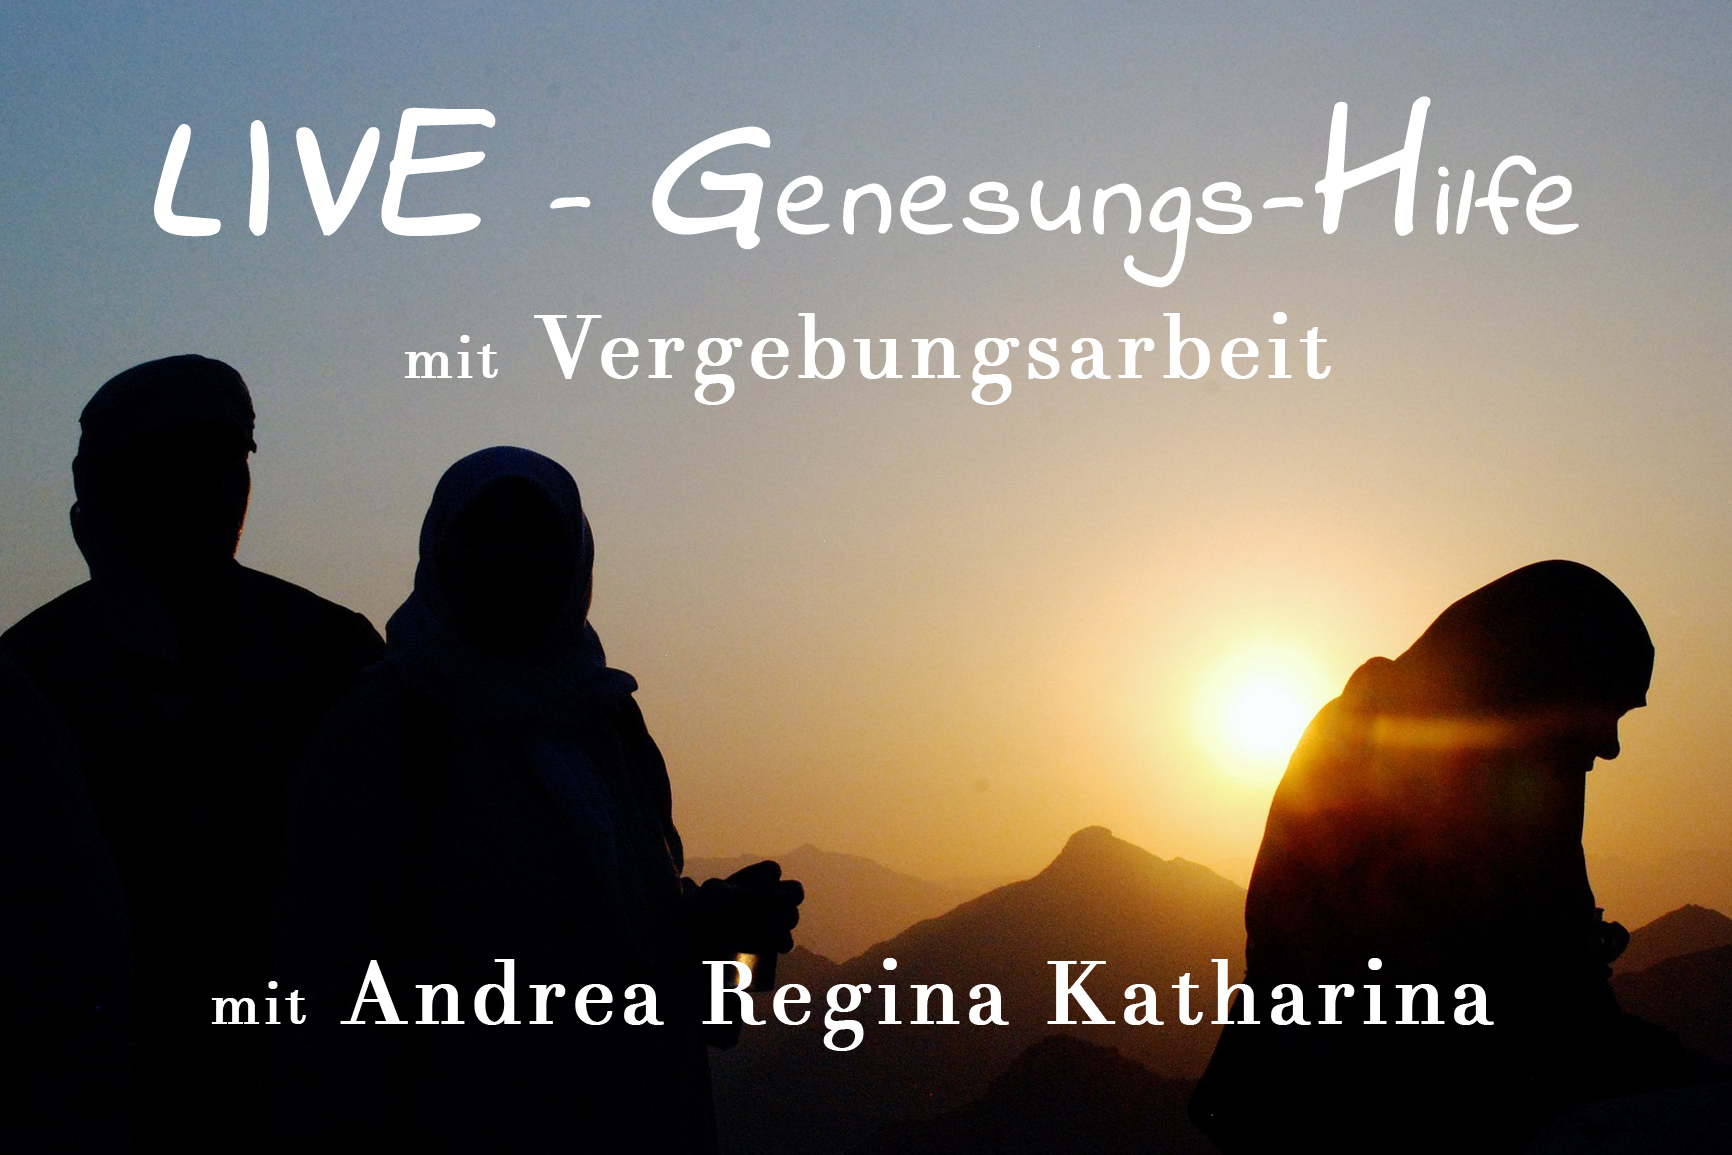 LIVE-Genesungs-Hilfe mit Vergebungsarbeit - eine intensive Begegnung mit Andrea Regina Katharina InEssenz